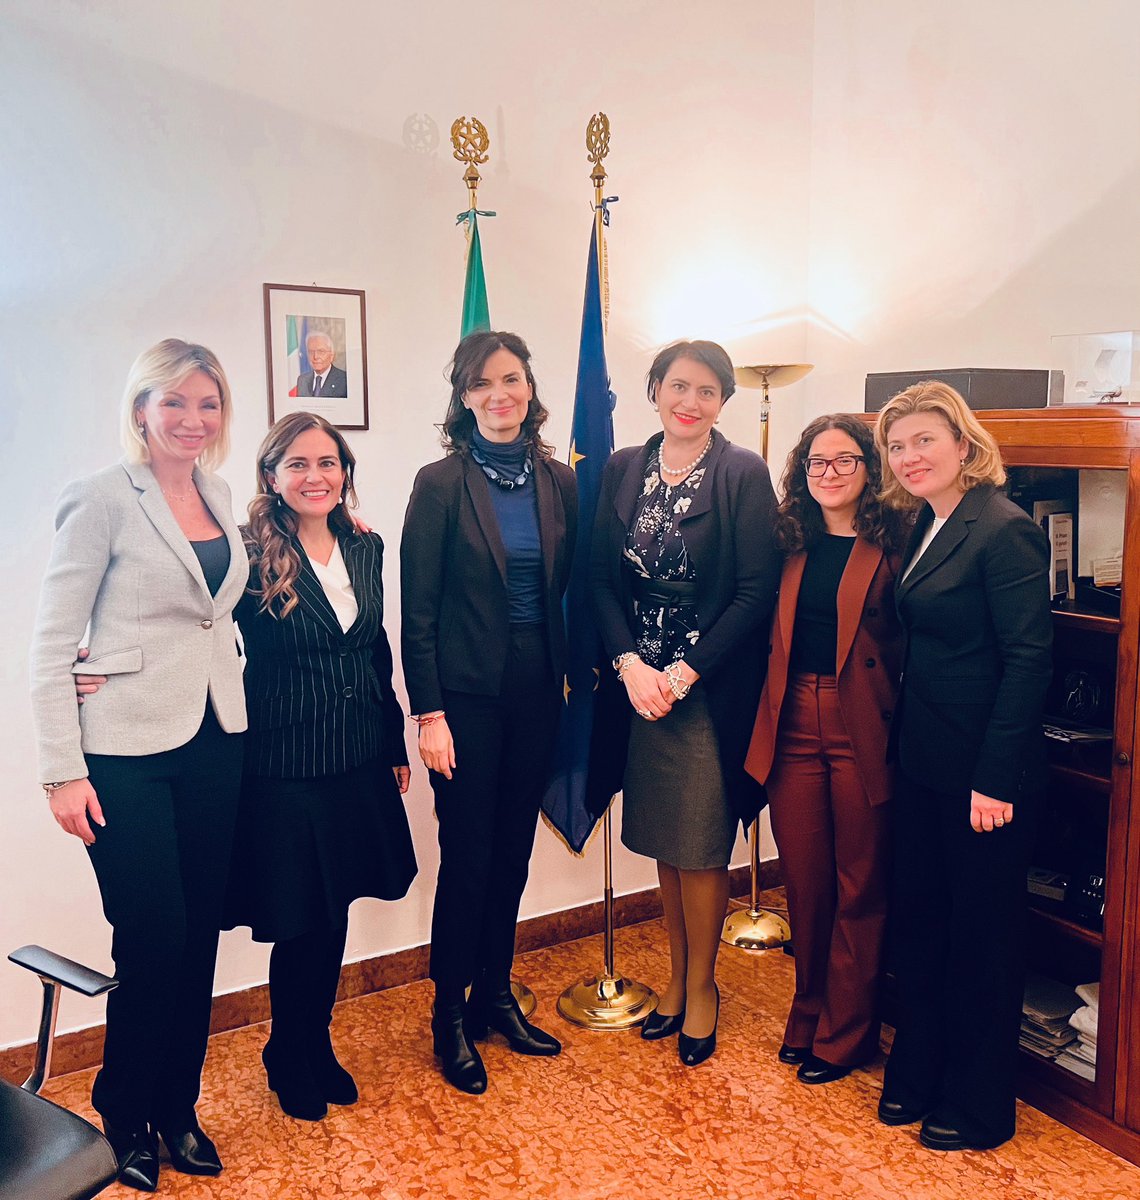 Grazie alla nuova Direttrice Generale per le Risorse e l'Innovazione della #Farnesina @PFalcinelli per la proficua occasione di confronto, piena di interessanti spunti operativi. Pronte a collaborare per valorizzare al meglio le #donne della #diplomazia 🇮🇹 #DID #WomenInDiplomacy